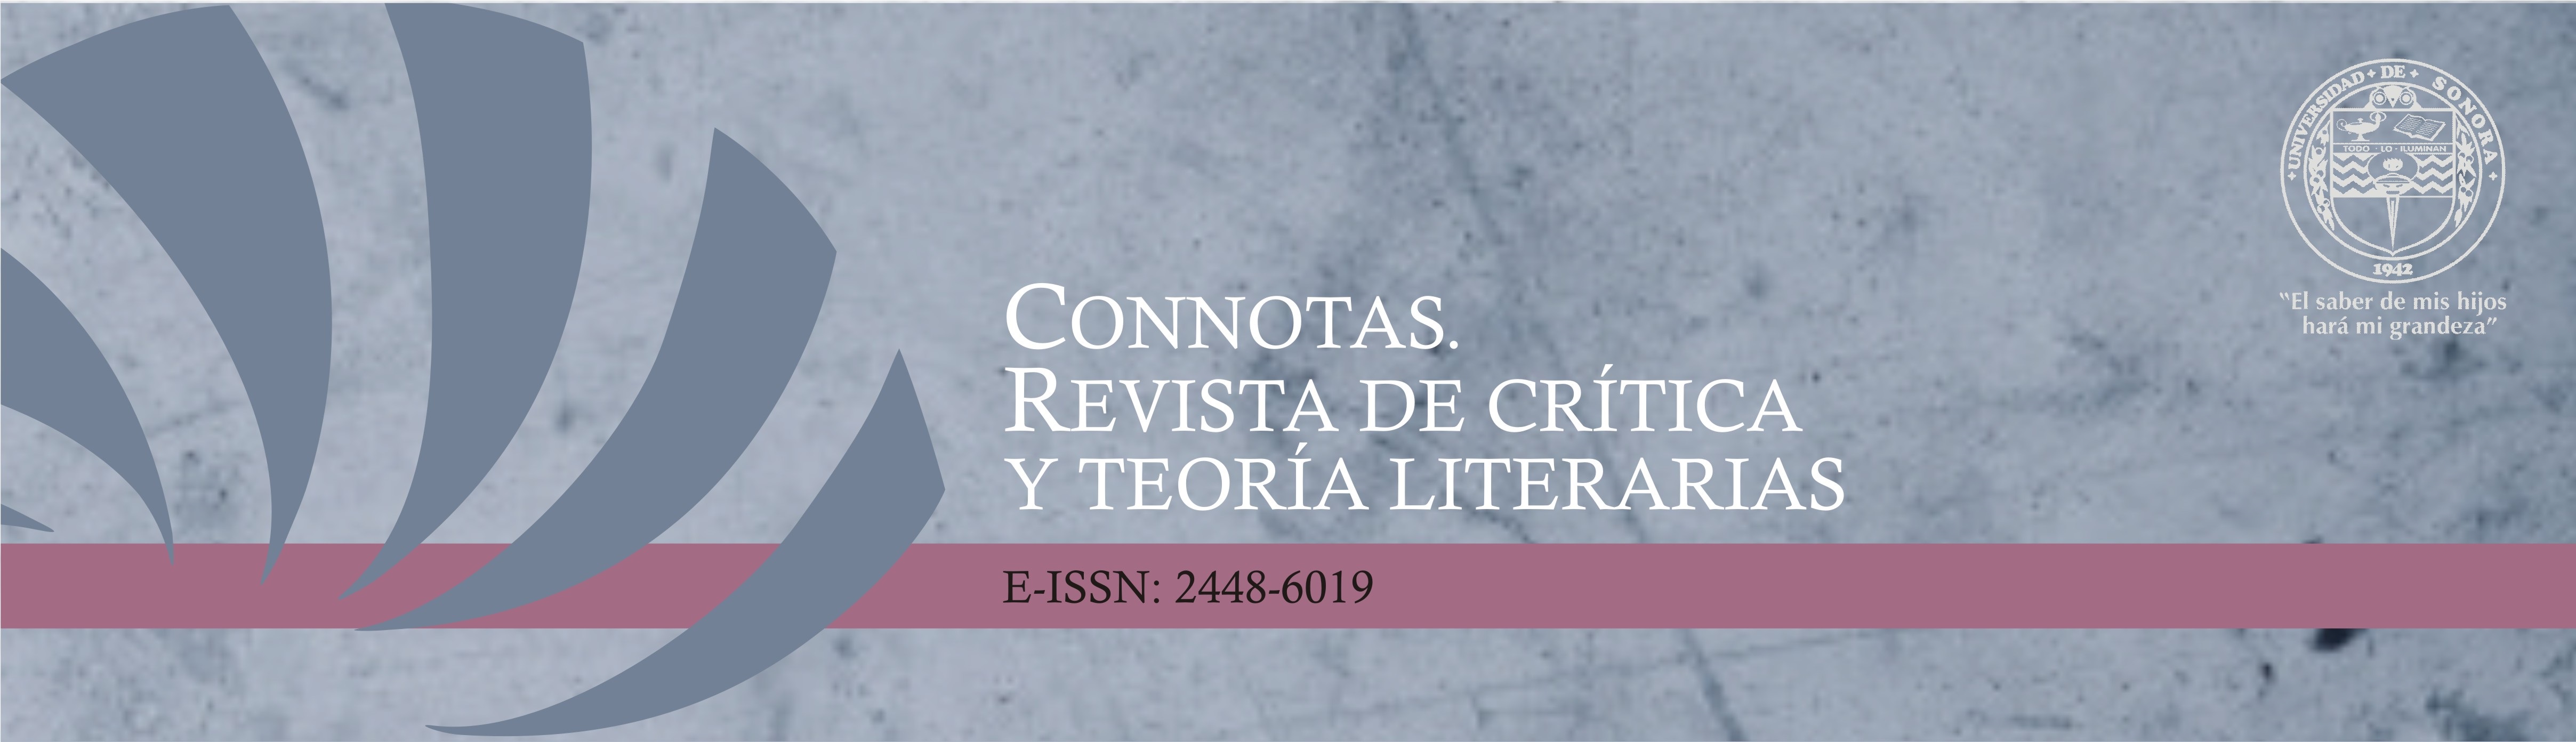 Banner de Connotas. Revista de crítica y teoría literarias, con nombre completo de la revista, ISSN electrónico y logo de la institución editora, la Universidad de Sonora